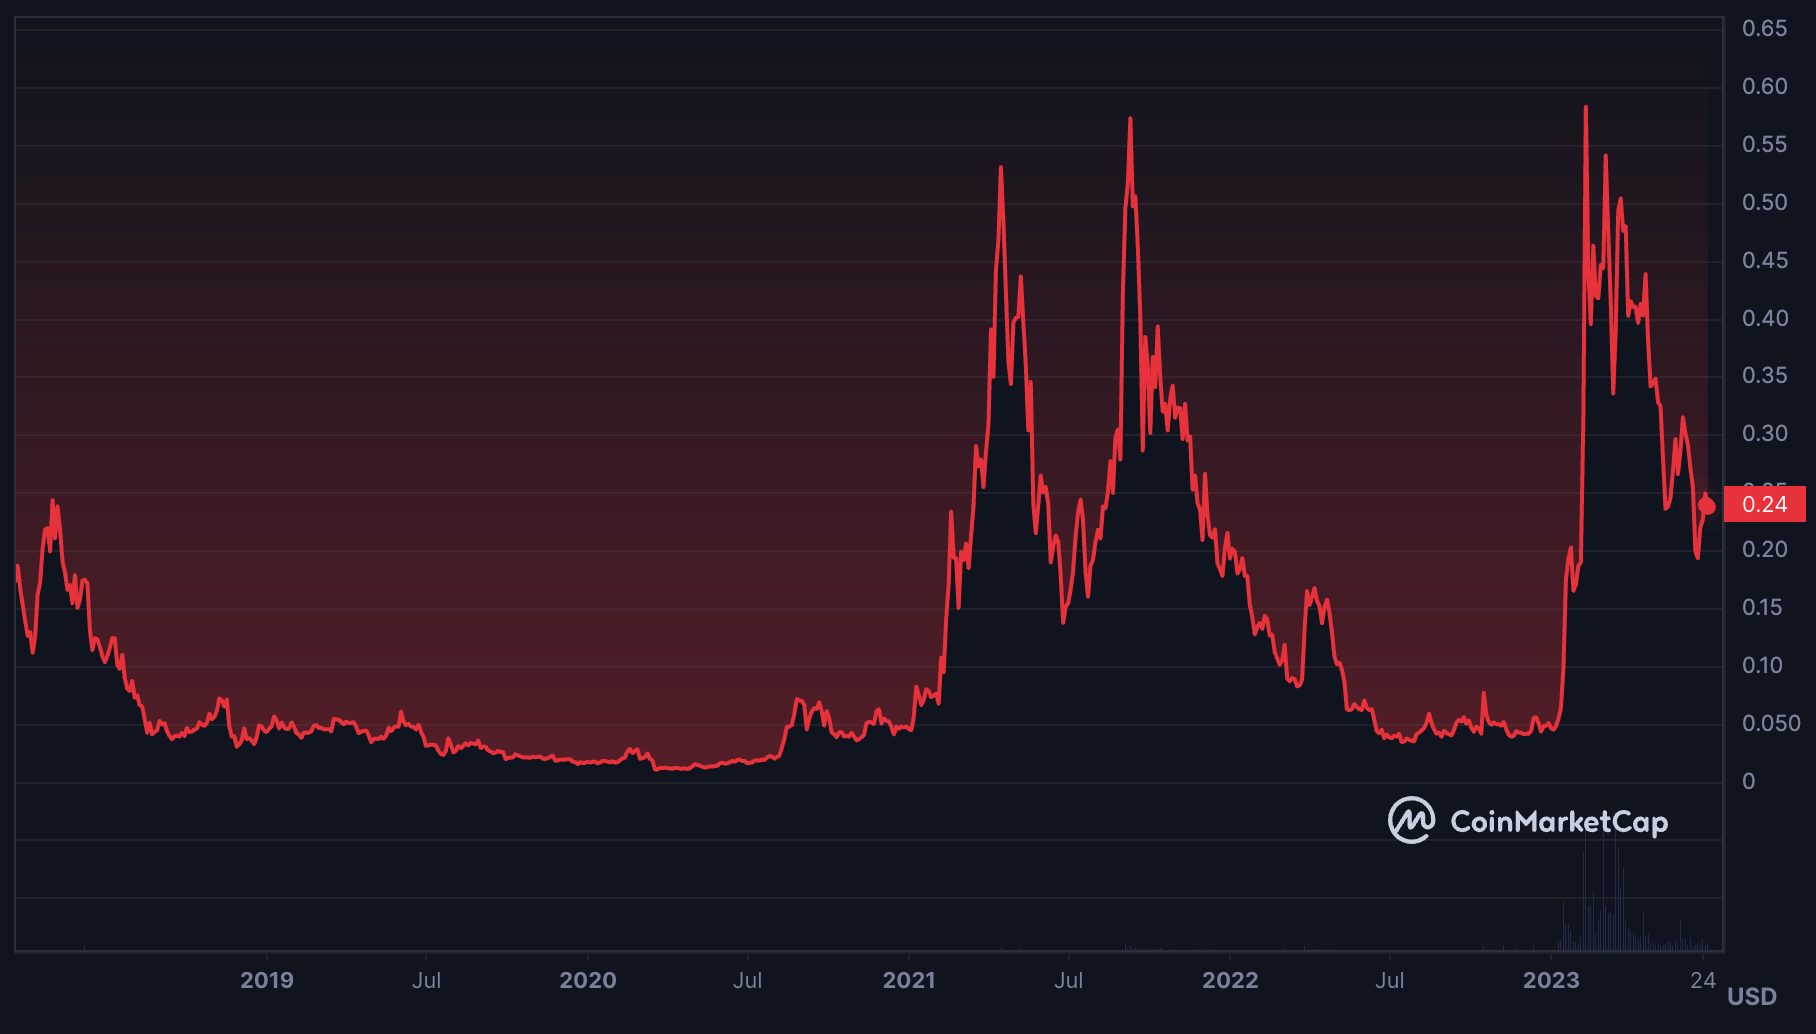 AGIX token's price history - SingularityNET (AGIX) Price Predictions 2023, 2025, 2030